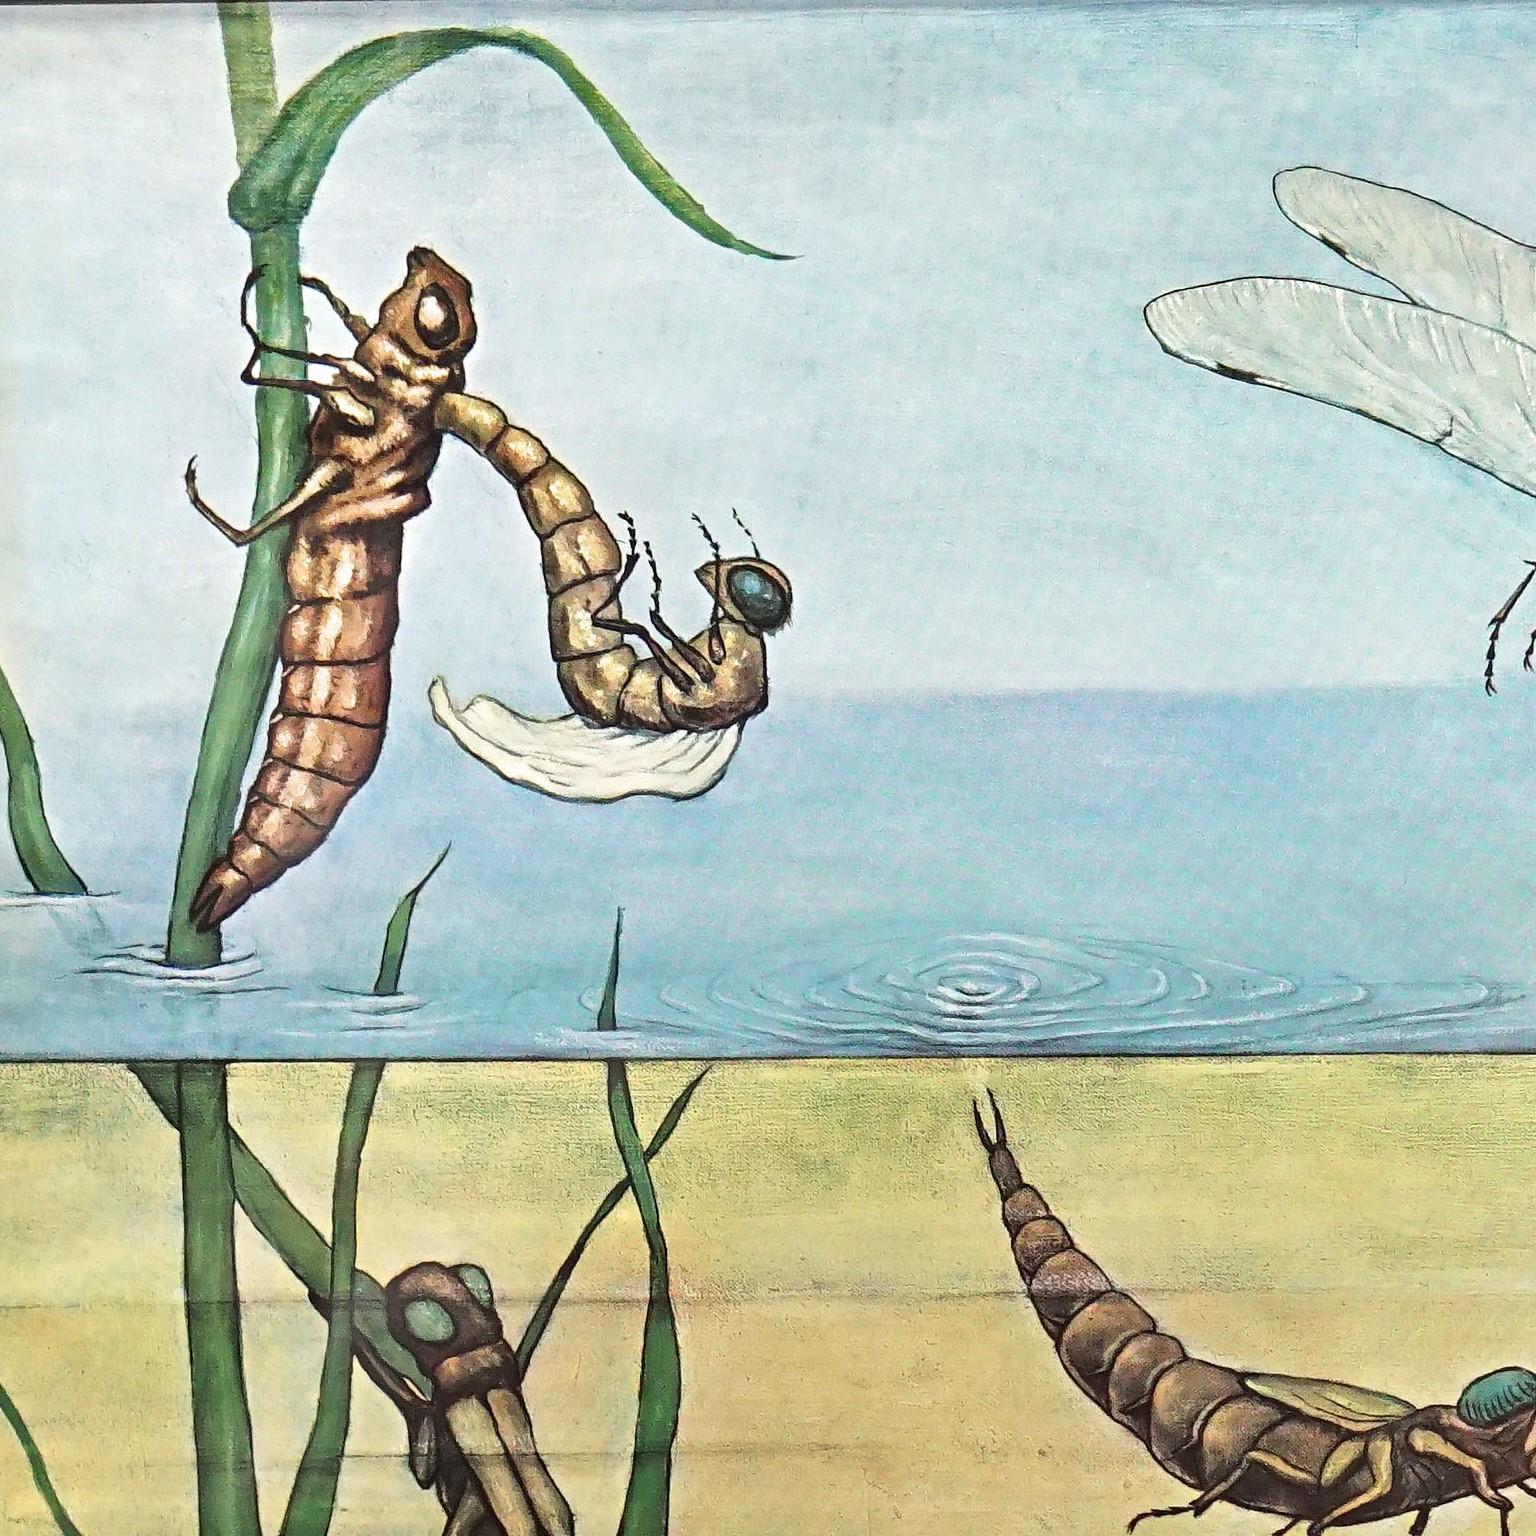 Die aufrollbare Wandtafel im Vintage-Stil illustriert die blaue Libelle (Calopteryx virgo). Herausgegeben von Jung Koch Quentell, Hagemann Verlag Düsseldorf. Farbenfroher Druck auf mit Leinwand verstärktem Papier.
Abmessungen:
Breite 83 cm (32,68